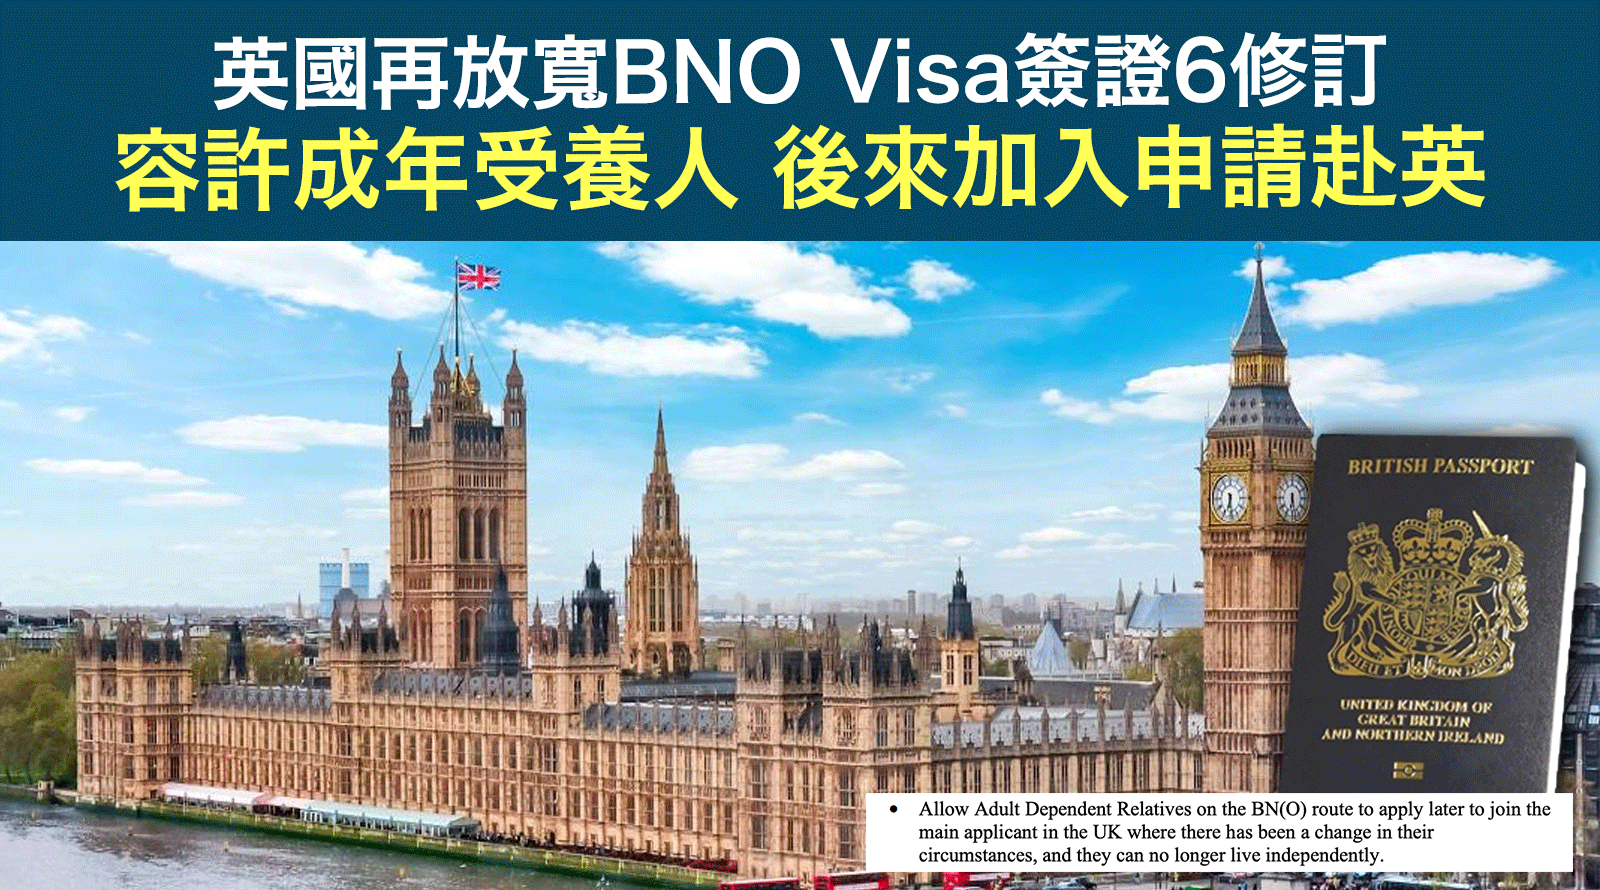 英國再放寬BNO-Visa簽證6修訂-容許成年受養人後來加入申請赴英